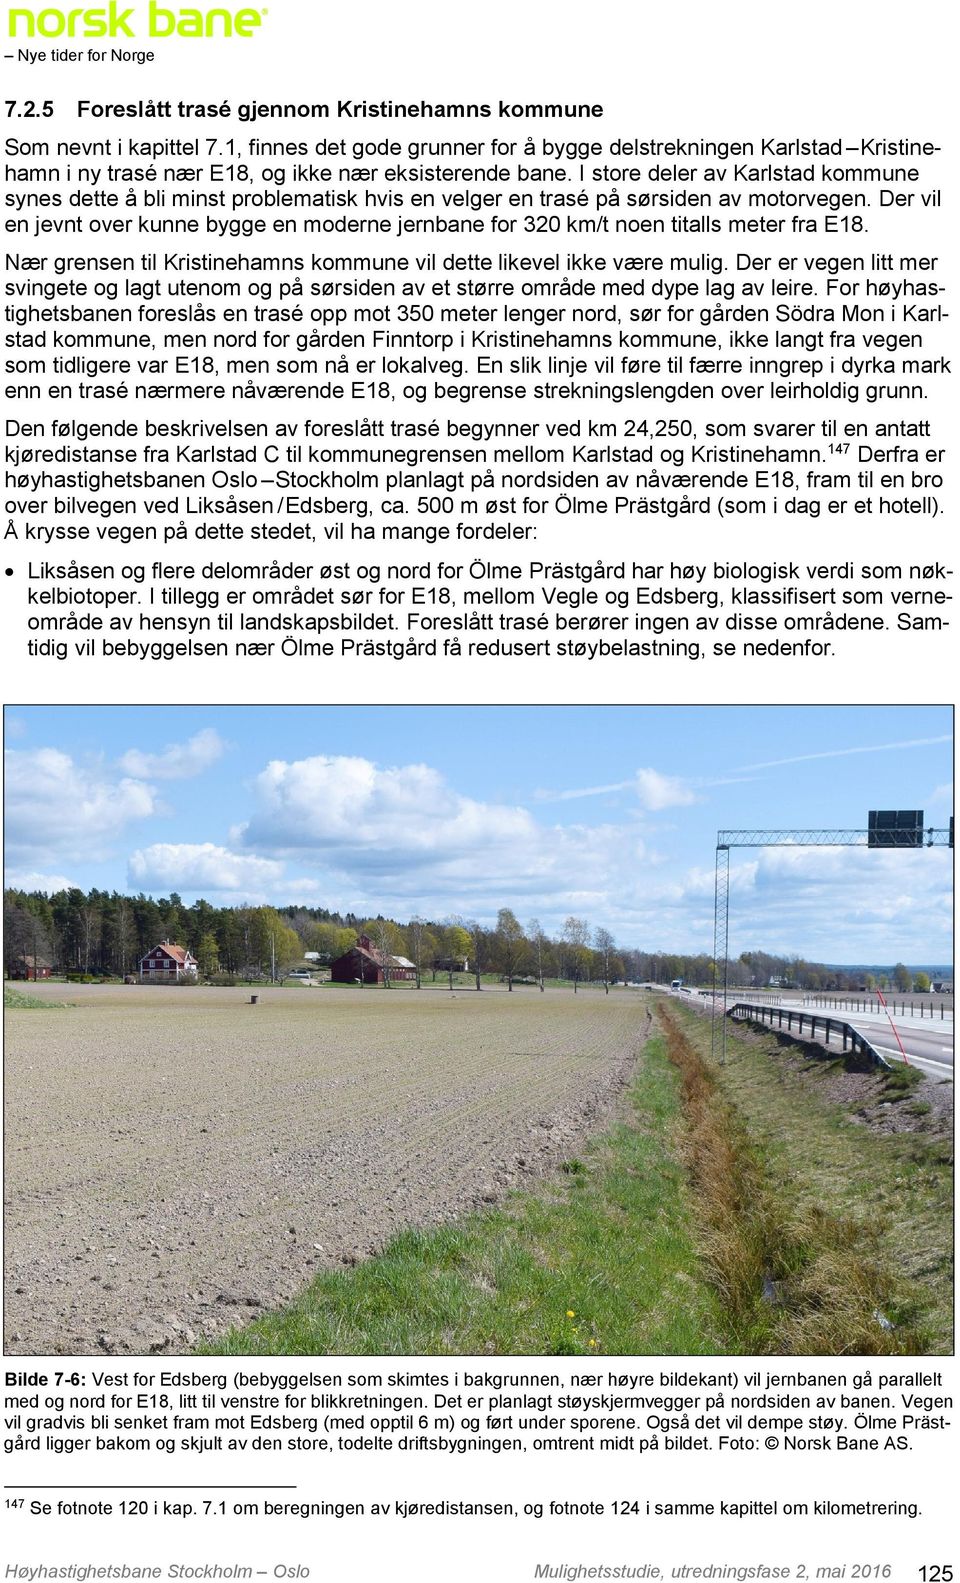 I store deler av Karlstad kommune synes dette å bli minst problematisk hvis en velger en trasé på sørsiden av motorvegen.